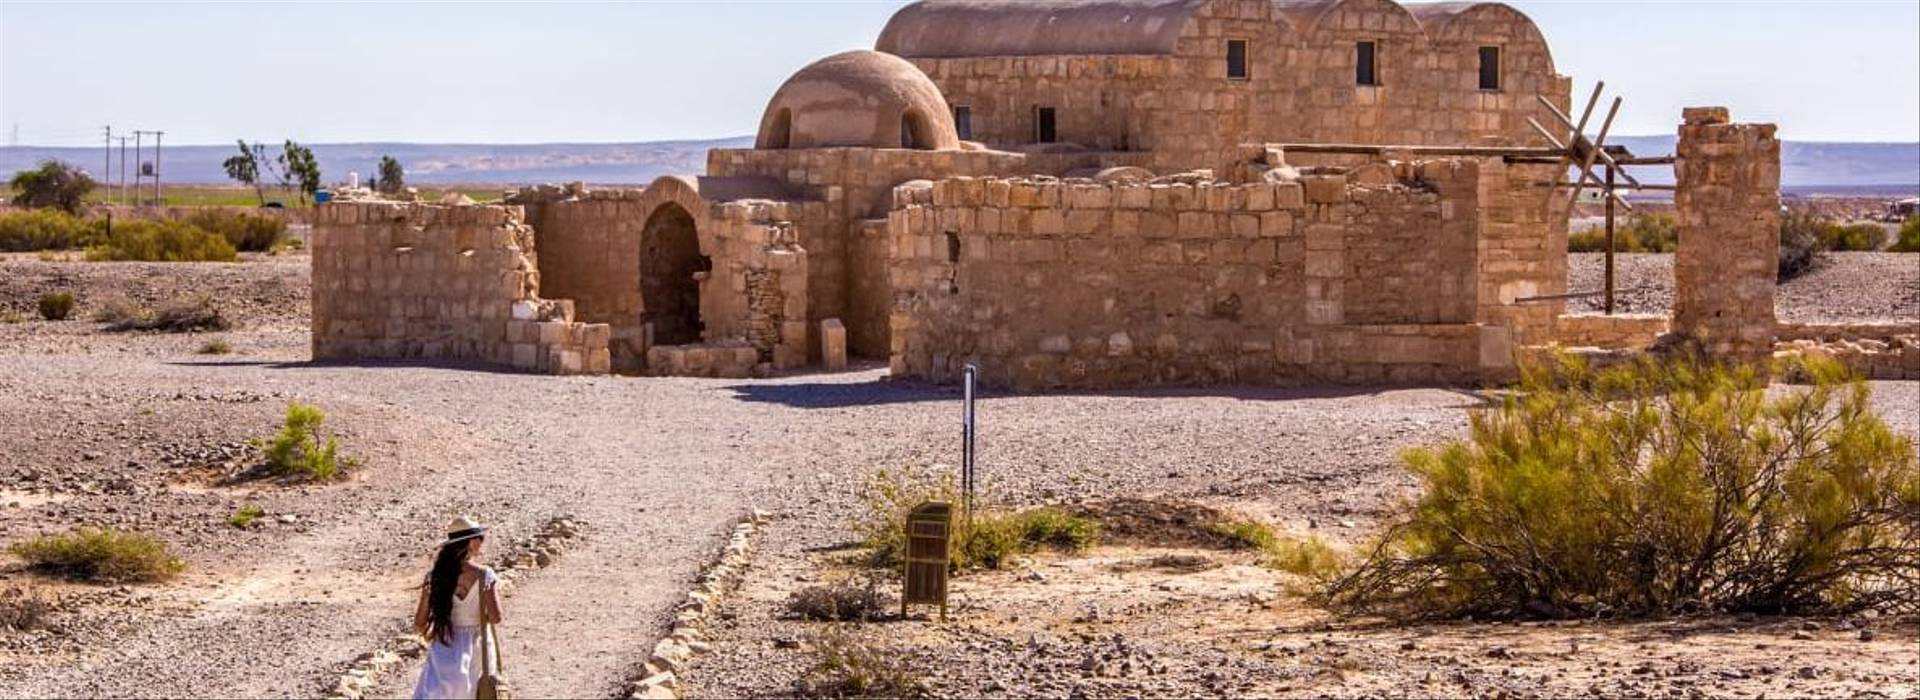 why-jordan-tours-Desert-Castles-2.jpg